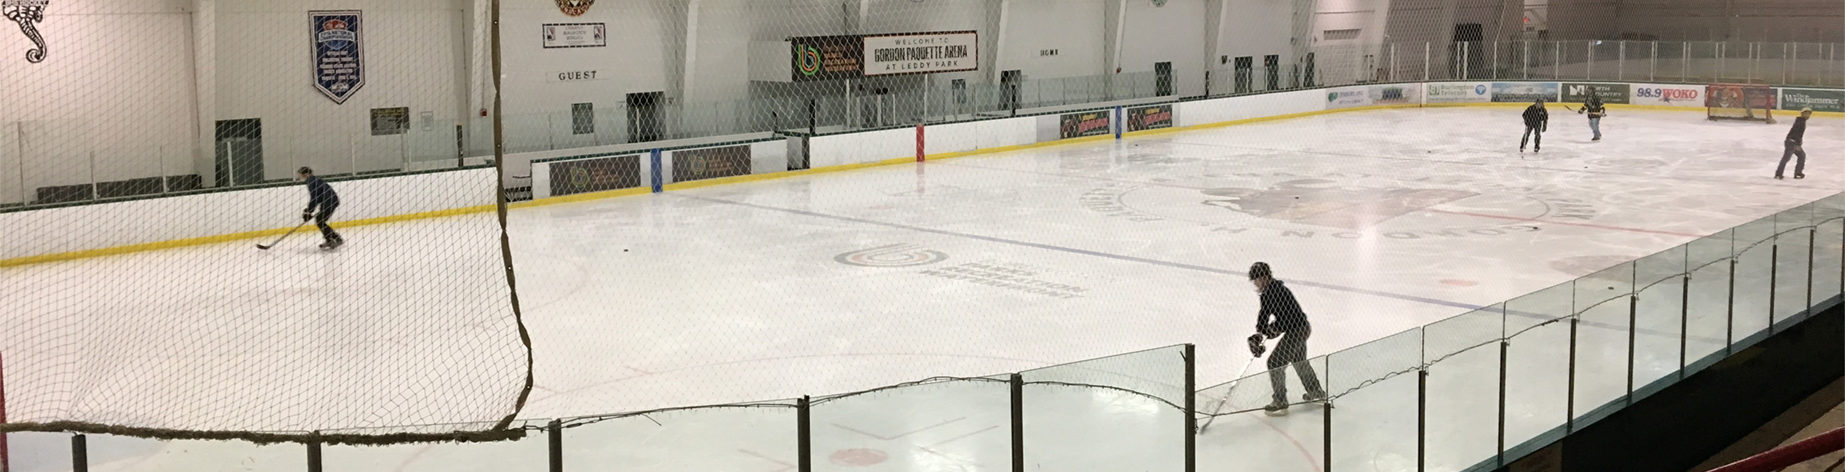 Leddy Ice Arena